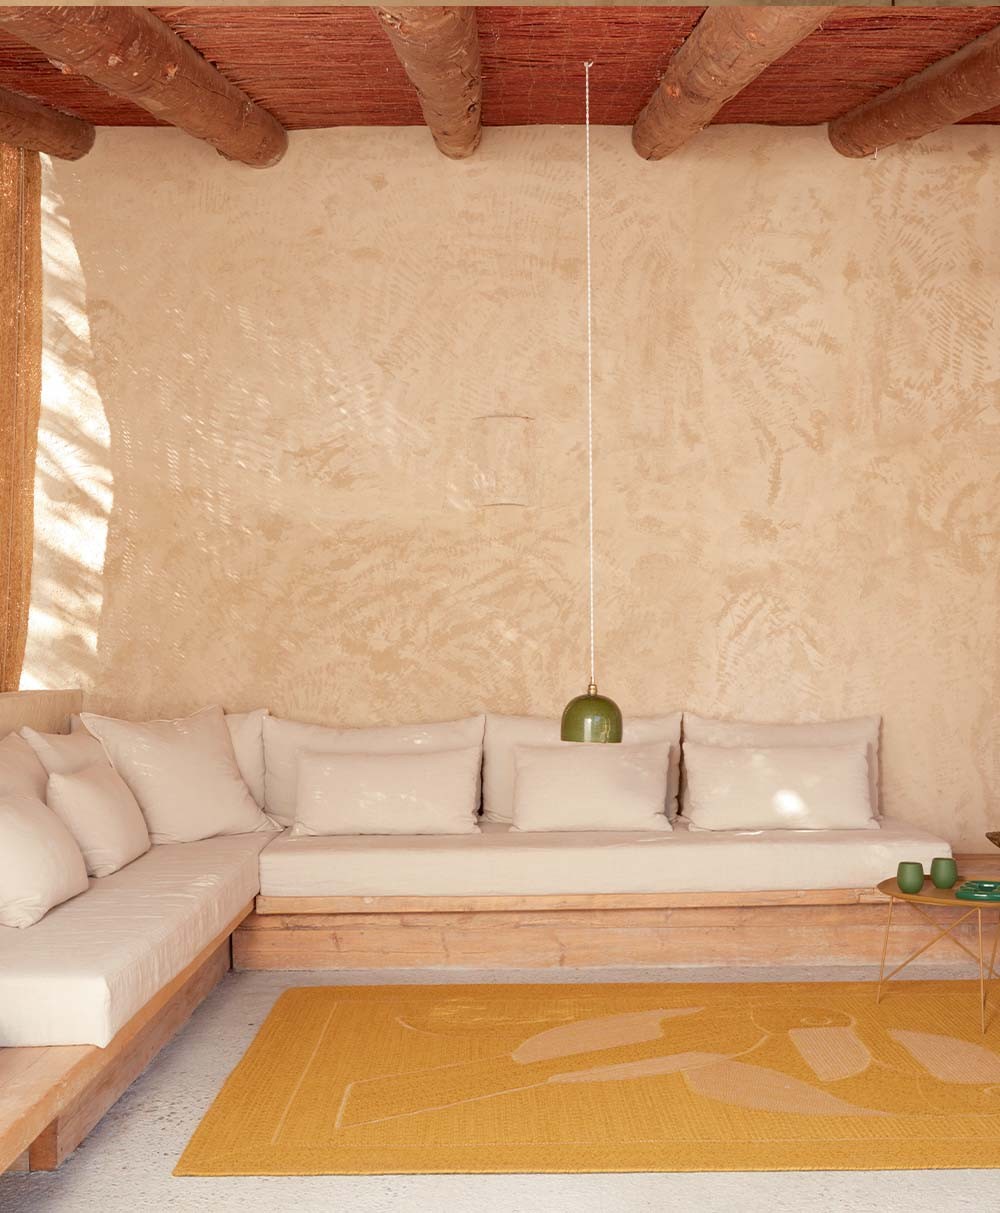 Hier abgebildet ein Moodbild von dem Teppich Diego et Frida von Èlitis - RAUM concept store